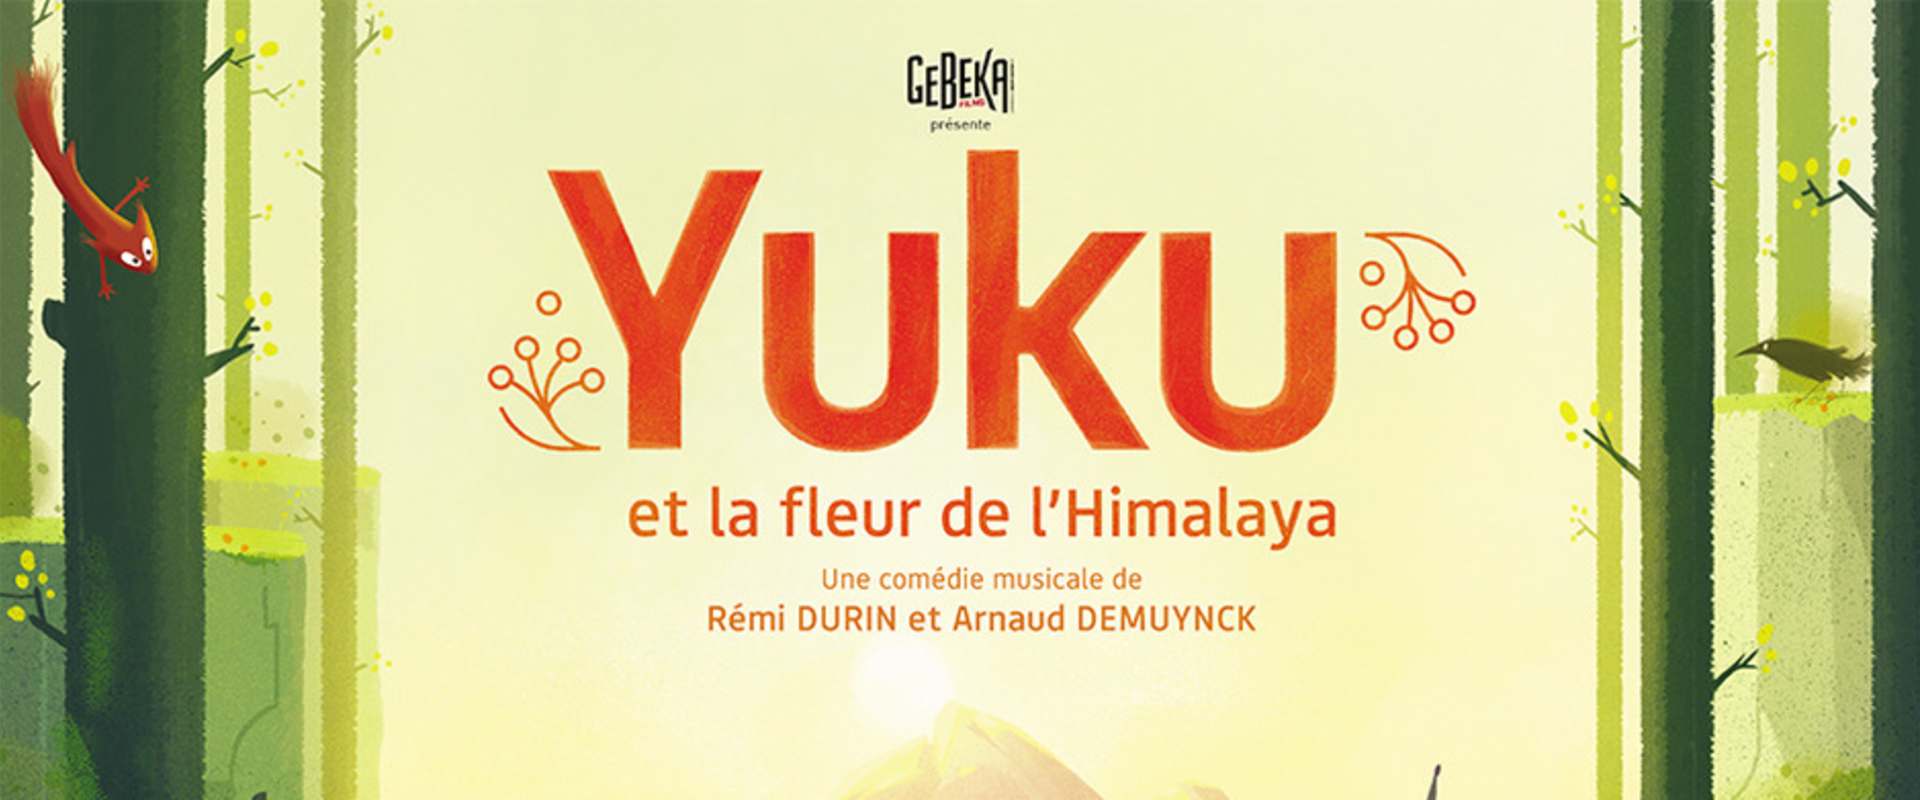 Yuku et la fleur de l’Himalaya background 2